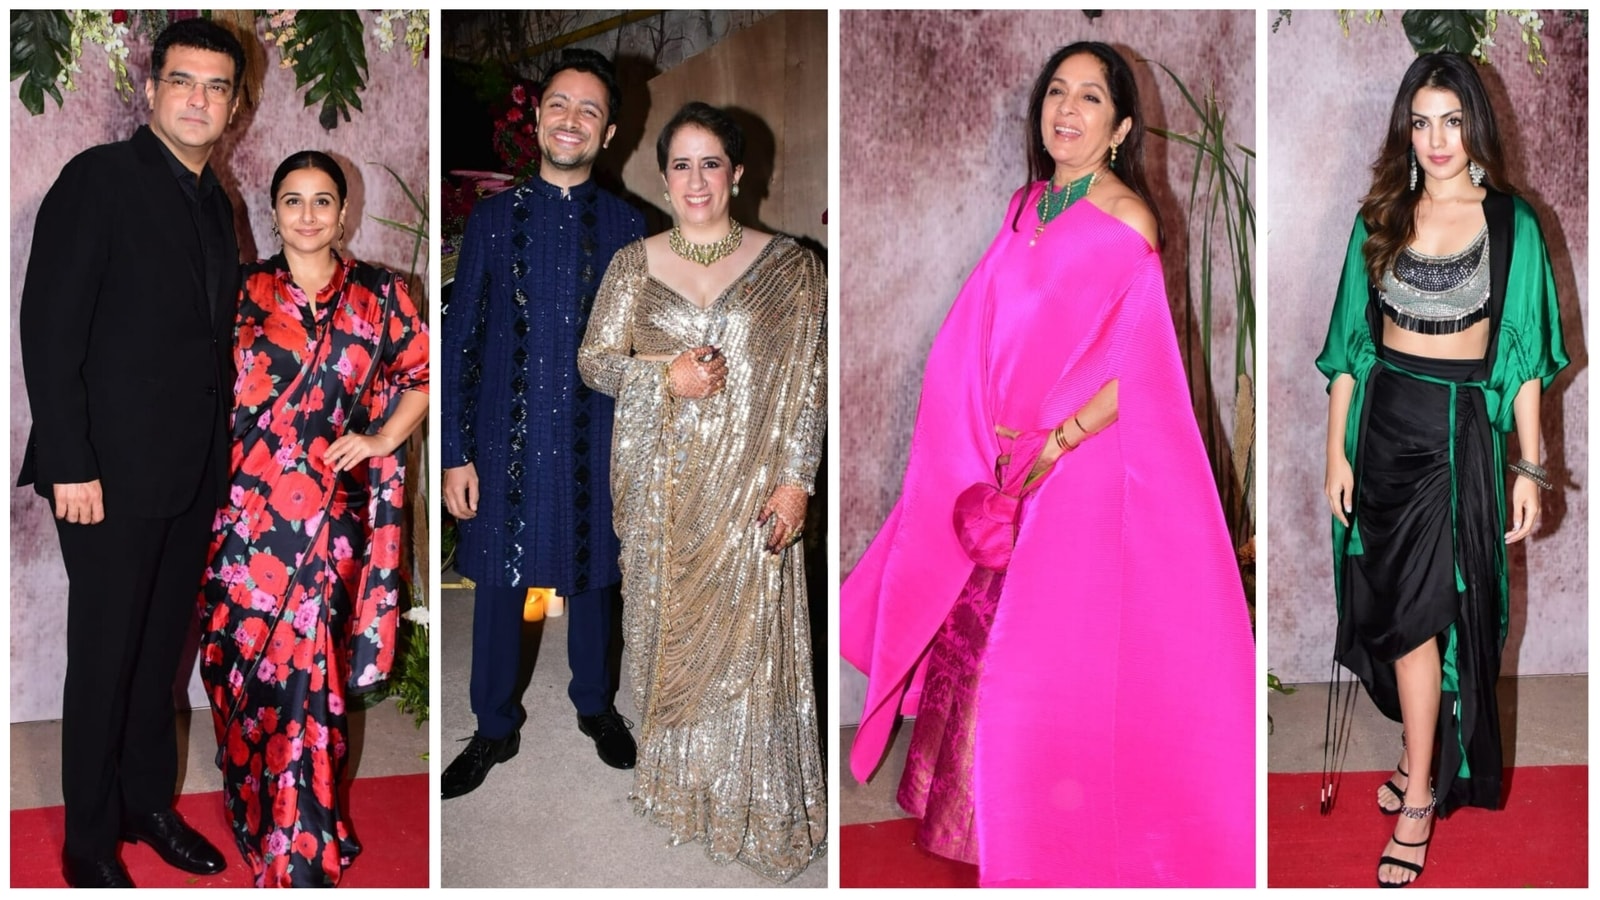 Видья Балан, Нина Гупта, Рея Чакраборти, Санья Малхотра на вечеринке с Гунит Монга и Санни Капур перед свадьбой